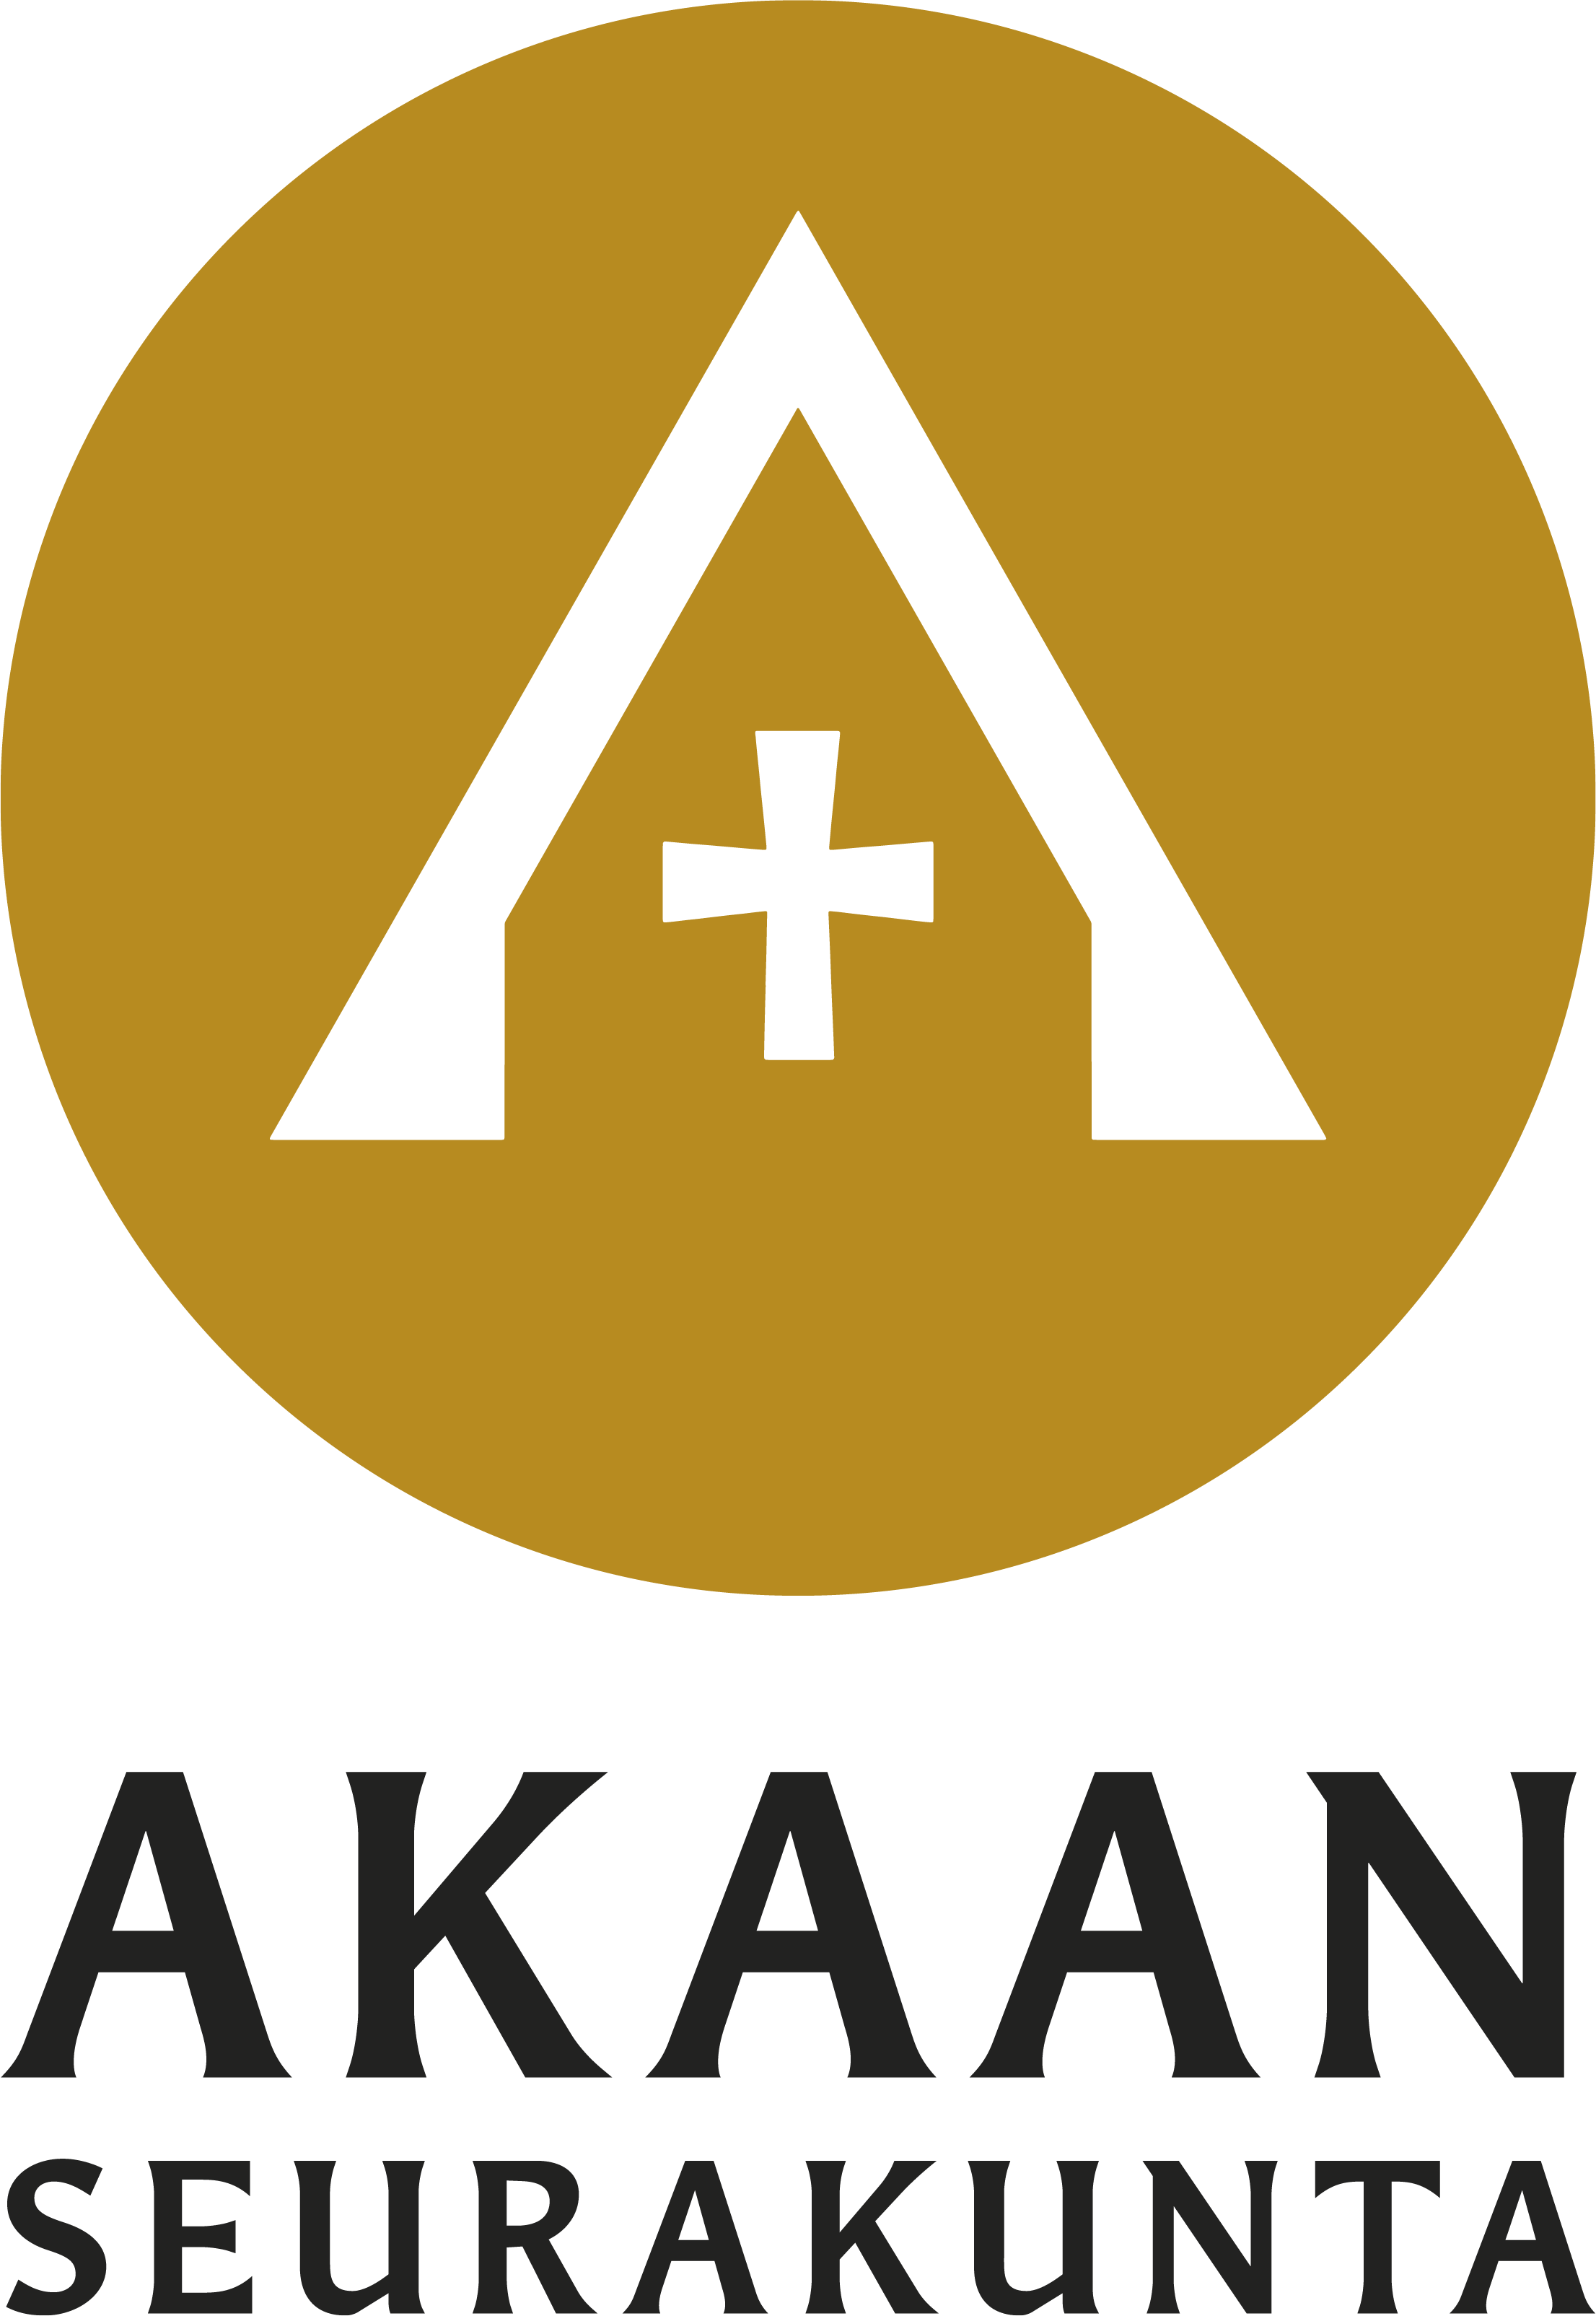 Akaan seurakunnan logo vaaka